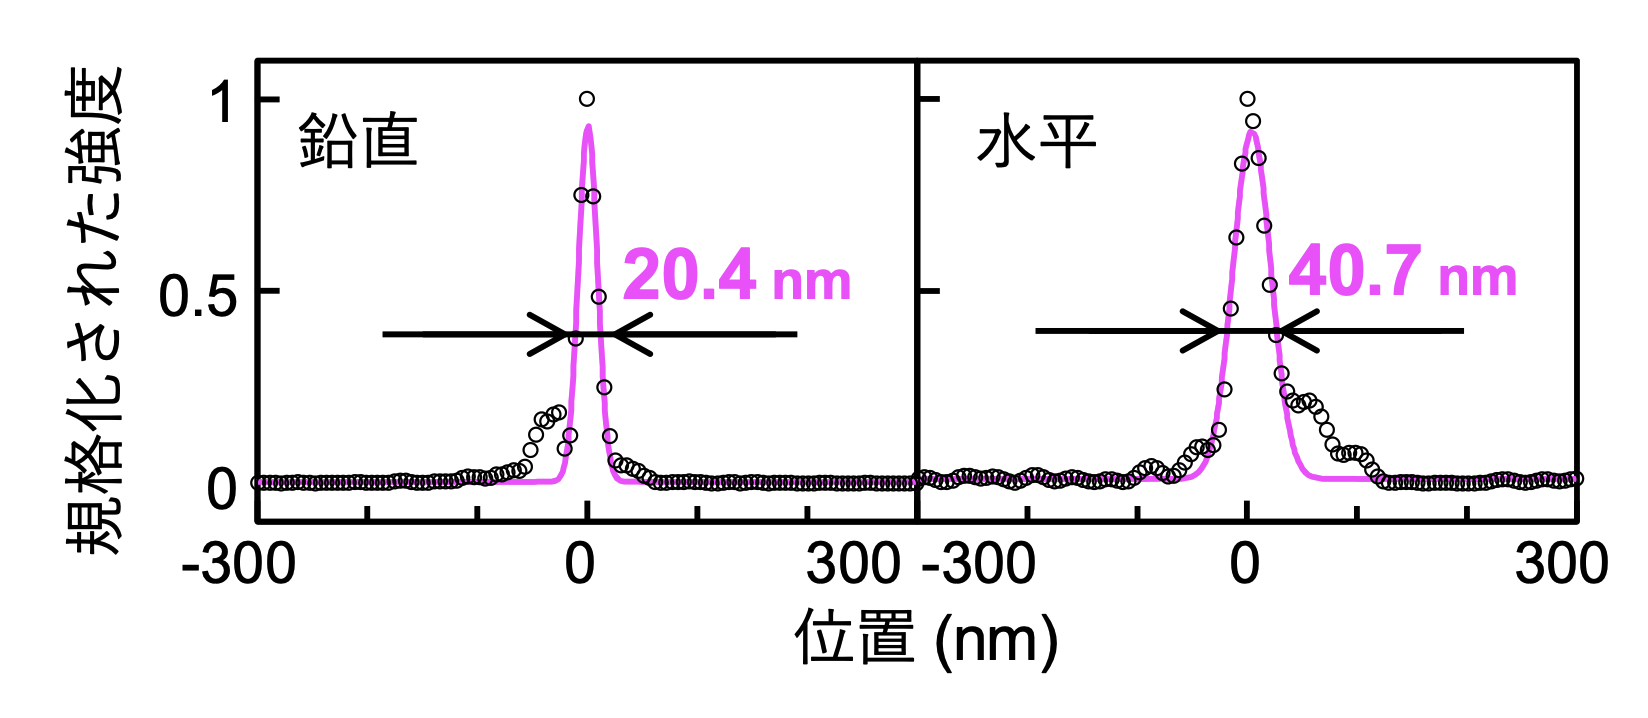 図2：光子エネルギー2 keVでの超精密小型ミラーによる集光プロファイル